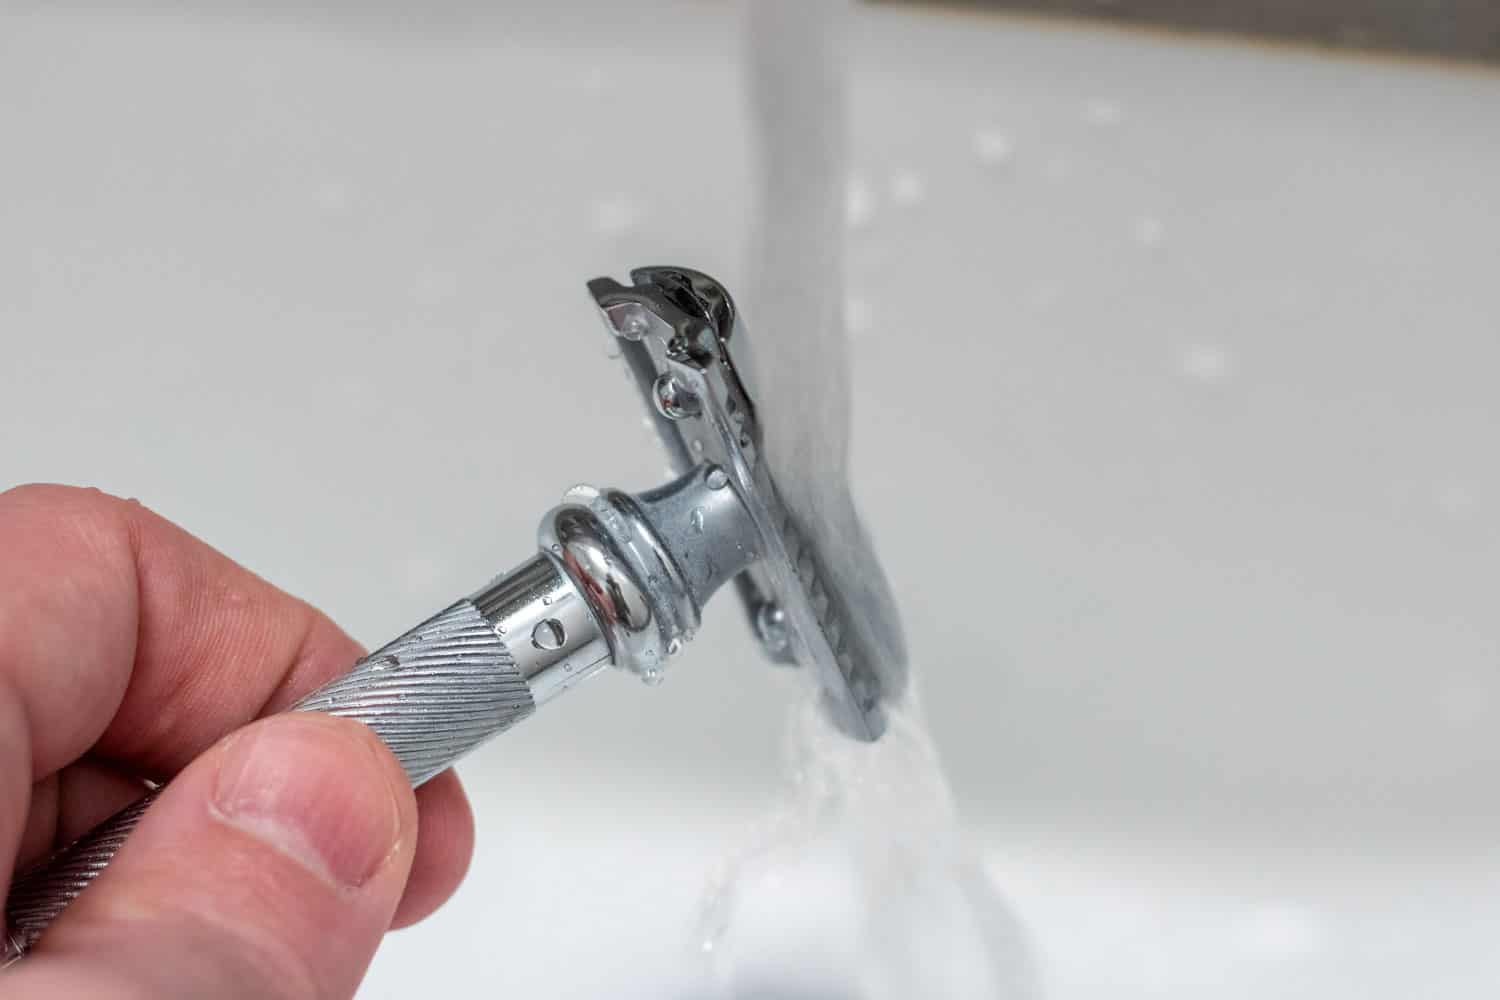 safety razor being rinsed under running water